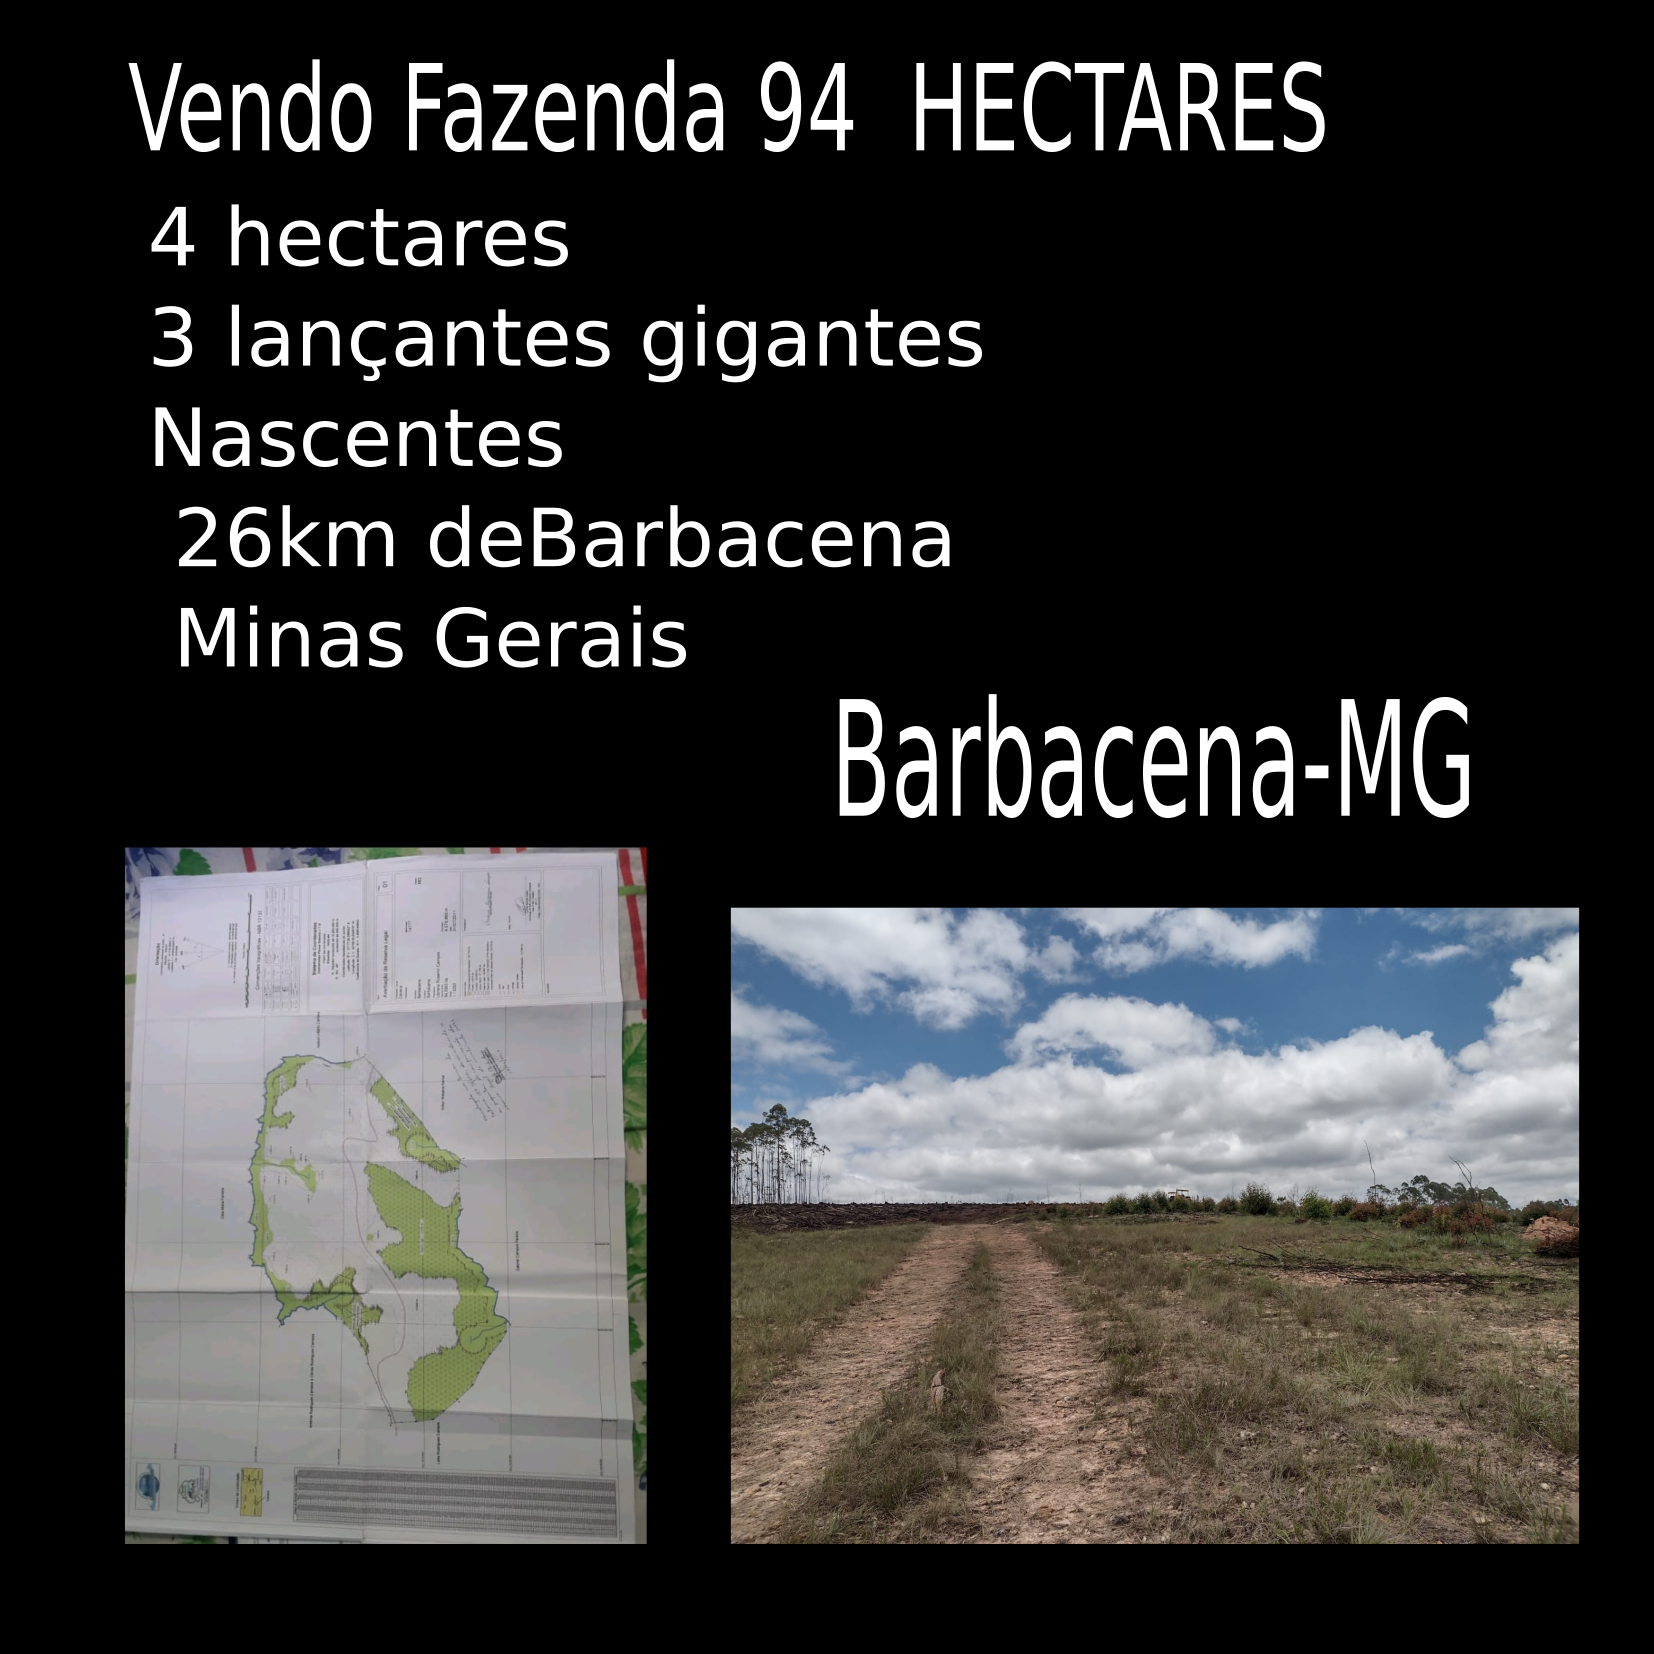 vendo fazenda de 94 hectares em barbace-mg capa